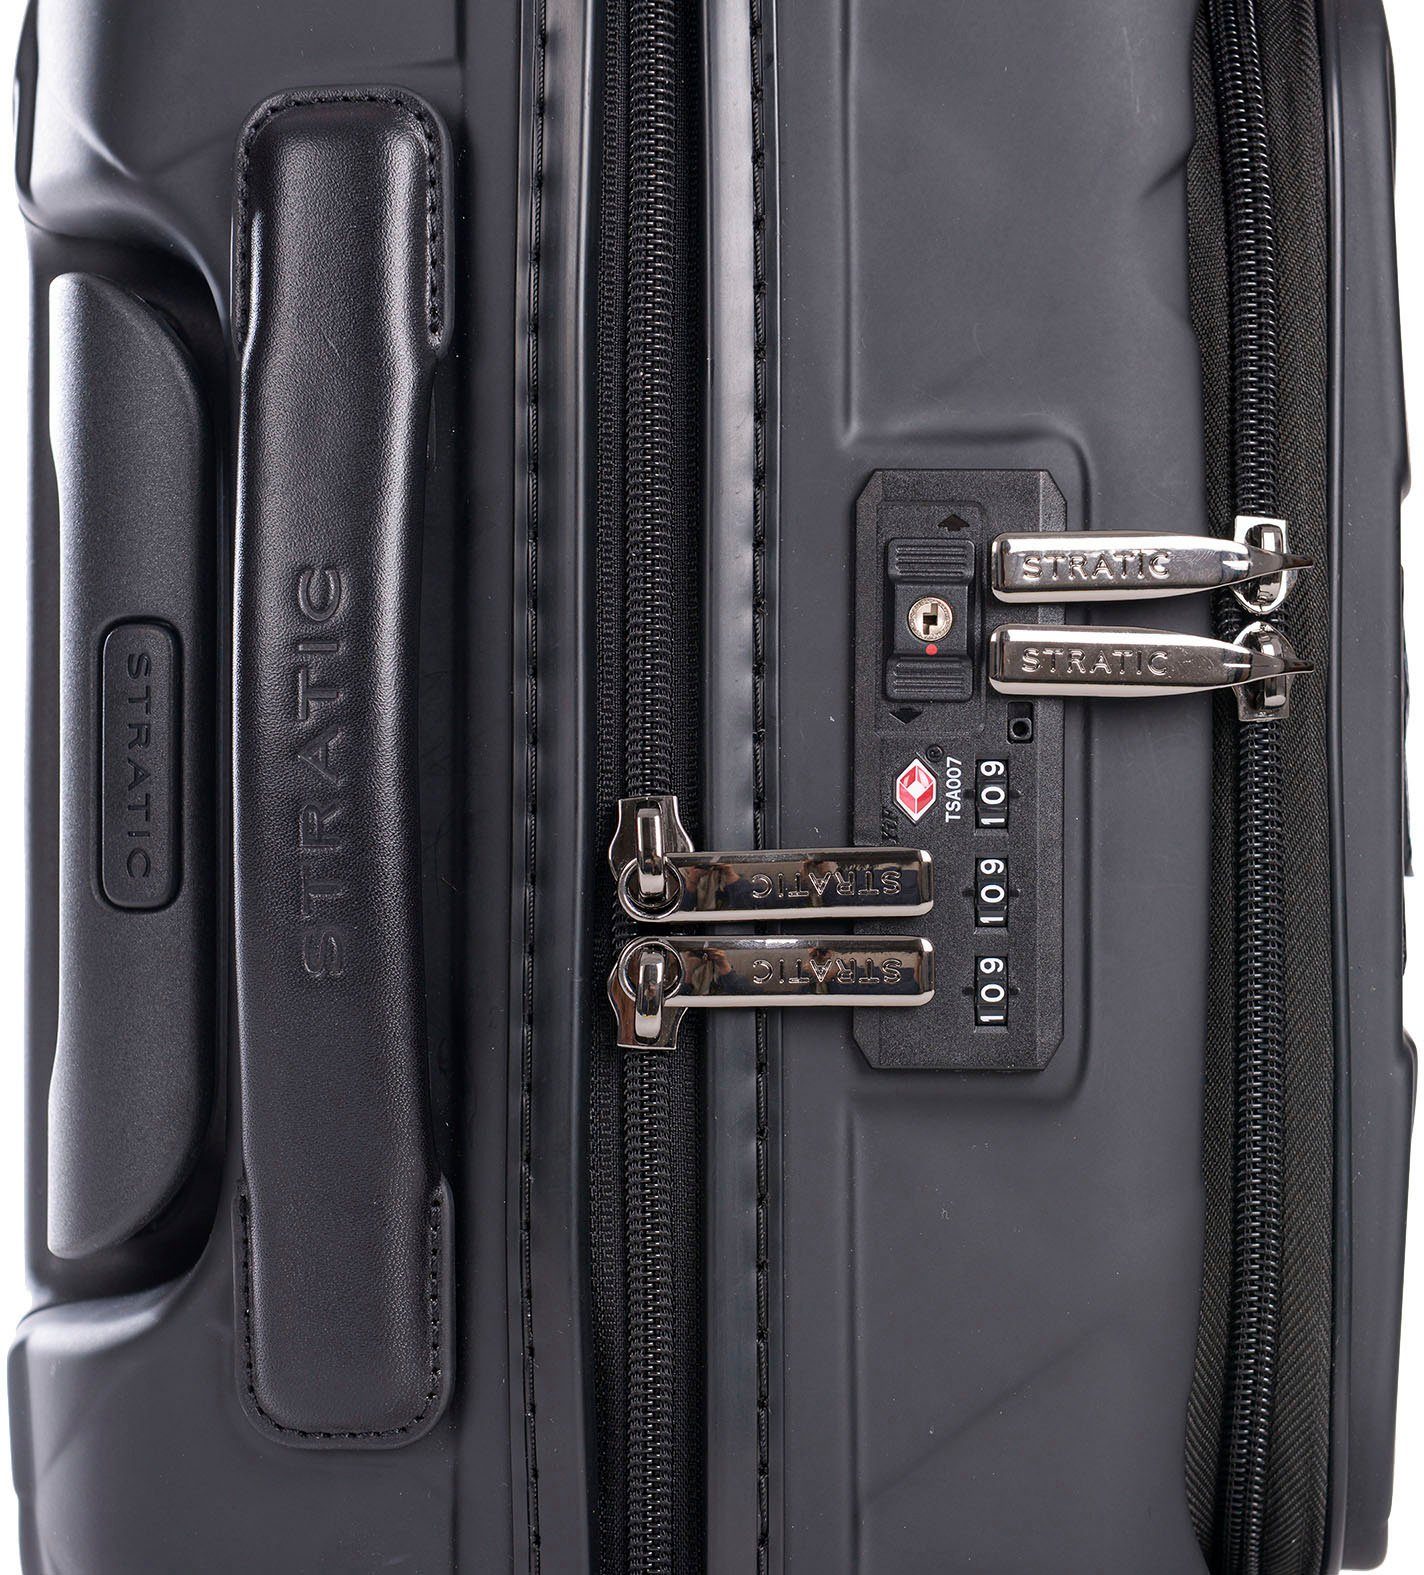 Stratic Hartschalen-Trolley Leather&More S mit NFC-Chip; matt mit Laptopfach Vortasche, Rollen, black, 4